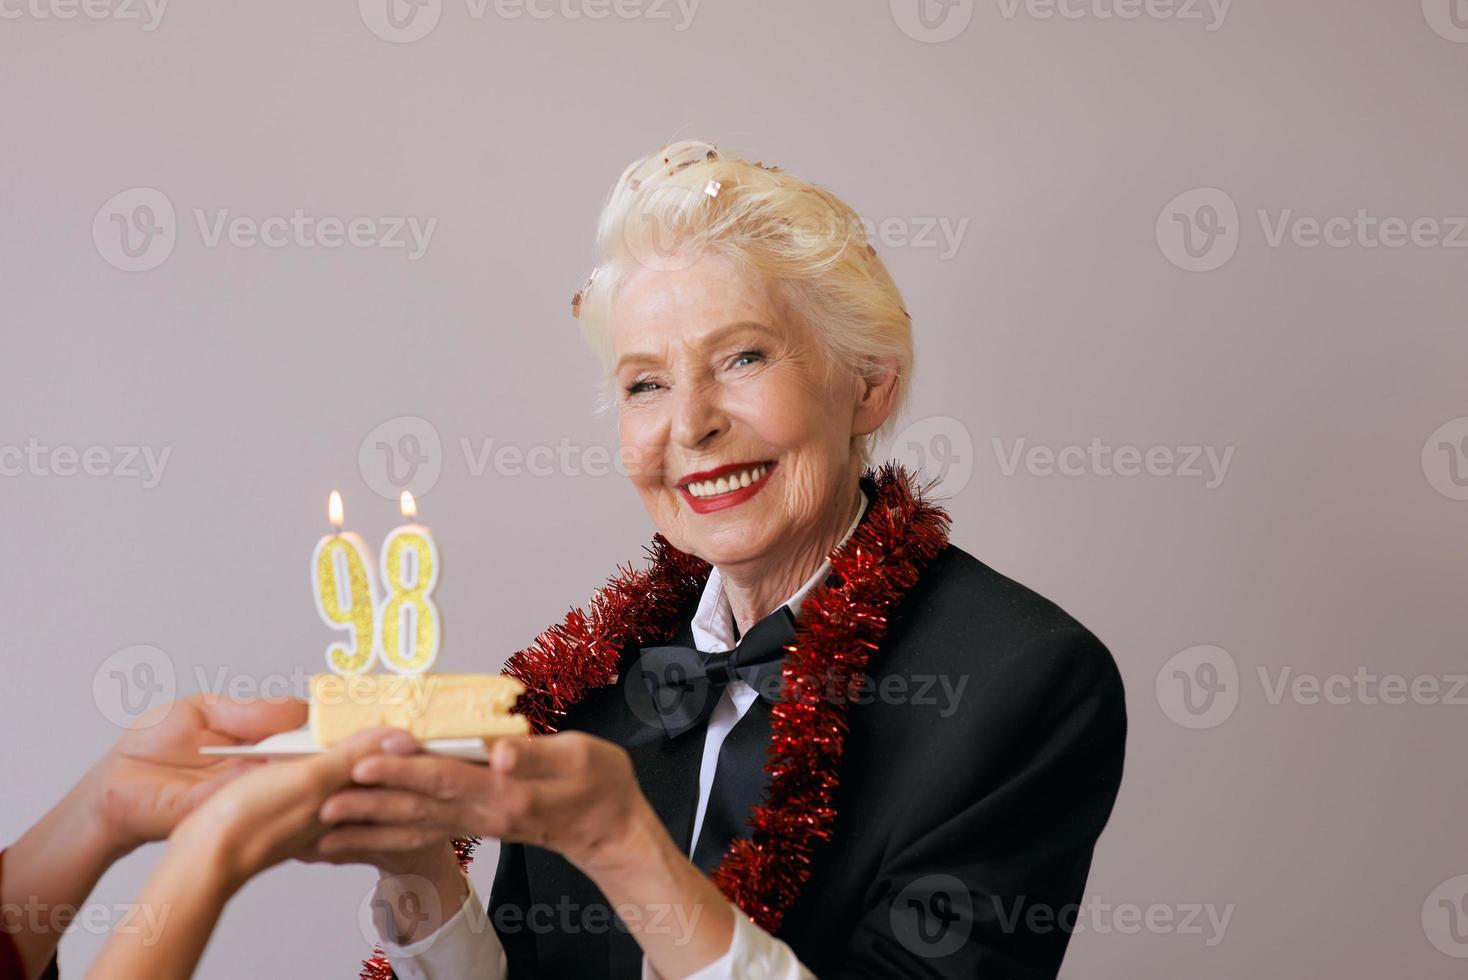 felice allegro elegante novantotto anni donna in abito nero festeggia il suo compleanno con la torta. stile di vita, positivo, moda, concetto di stile foto